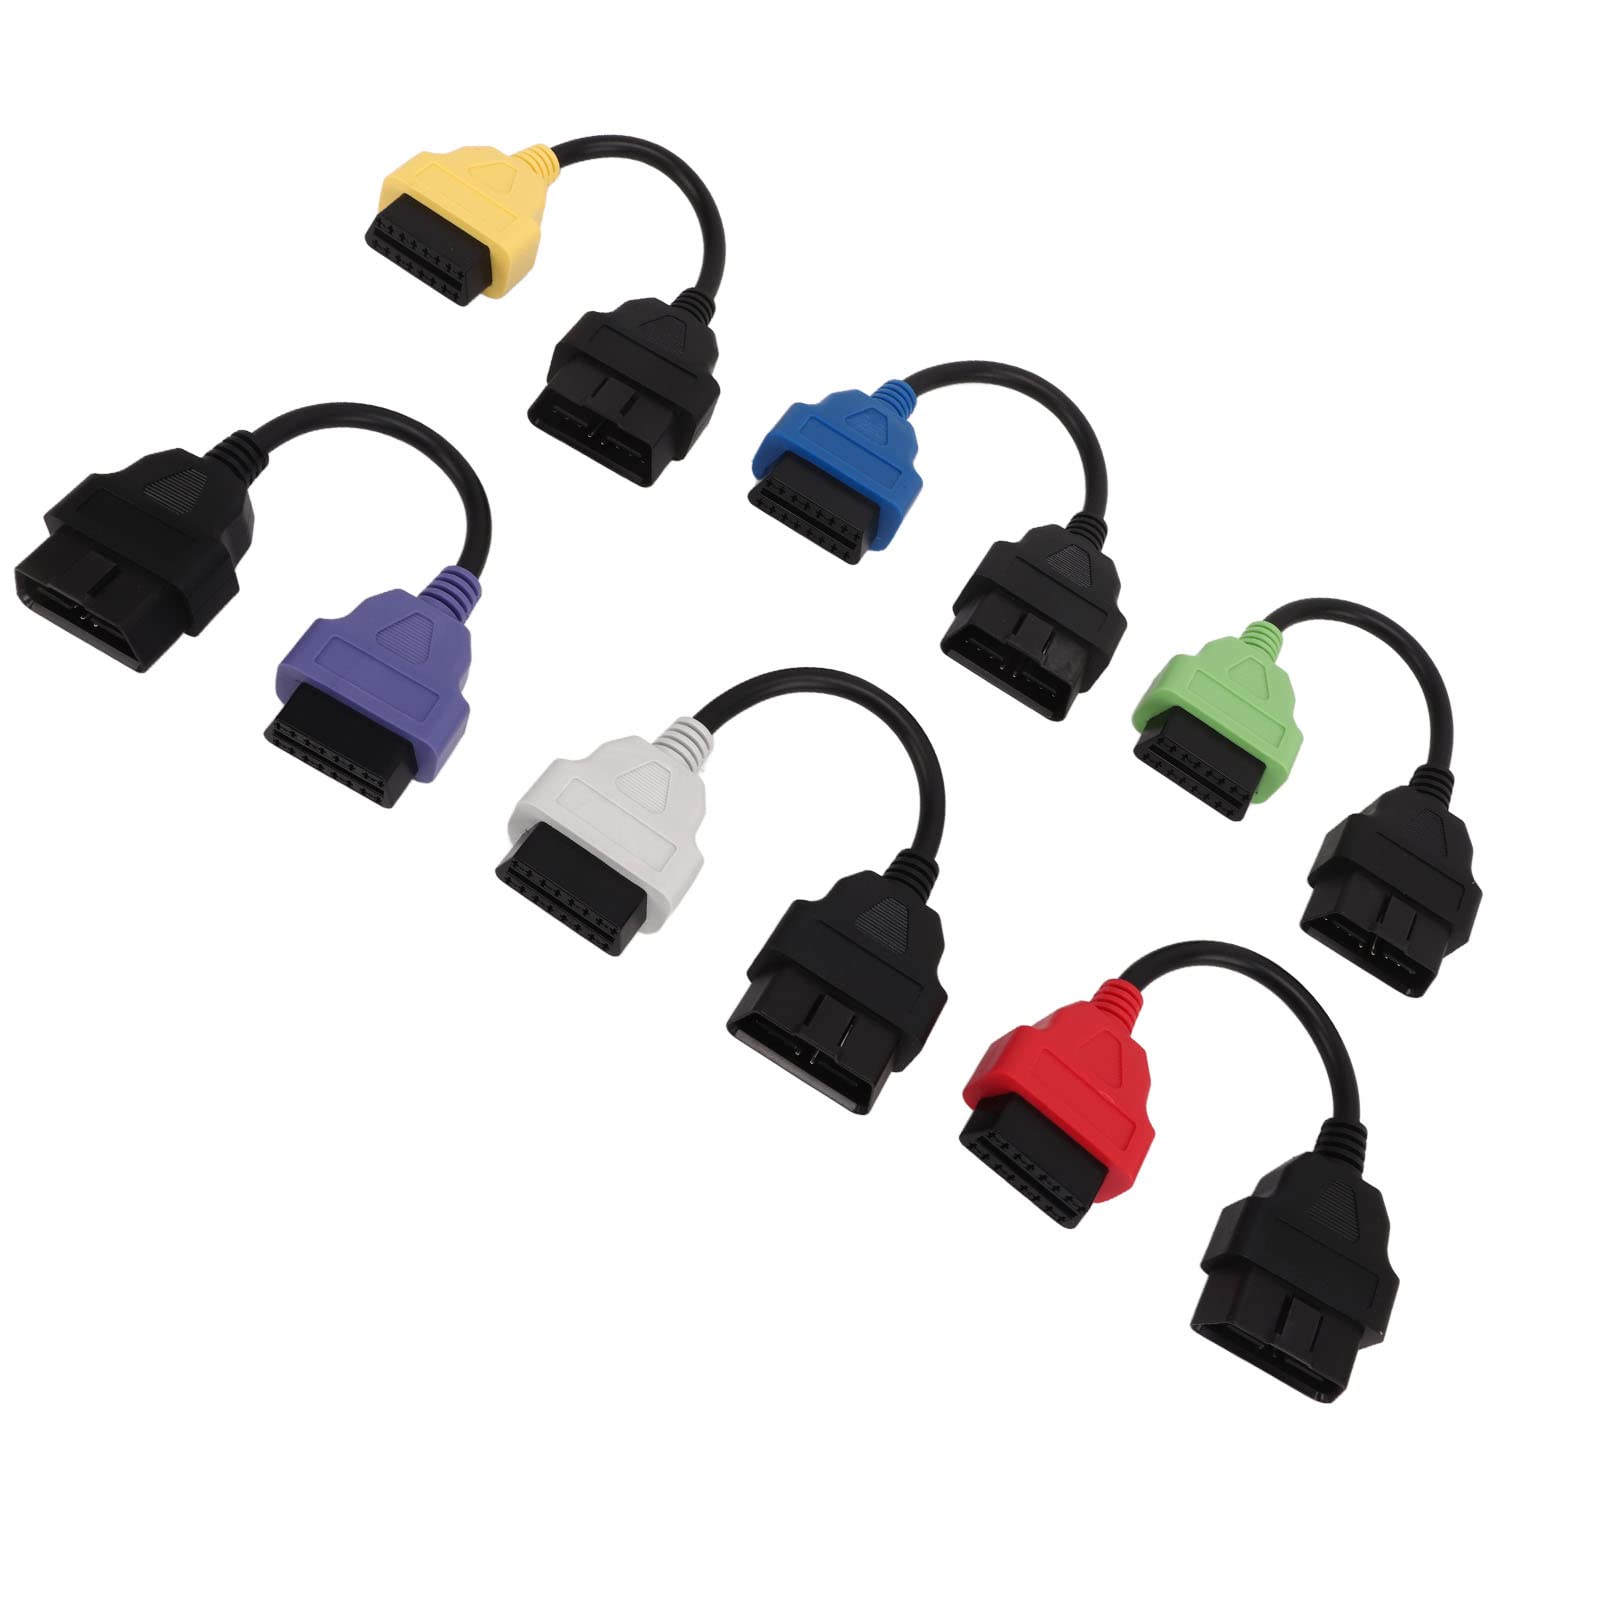 OBD2 Adapterkabel, 6 Stück für MultiECUScan Adapterkabel OBD2 Diagnose ECU Scan Tool Kabel Ersatz für Fiat von KIMISS